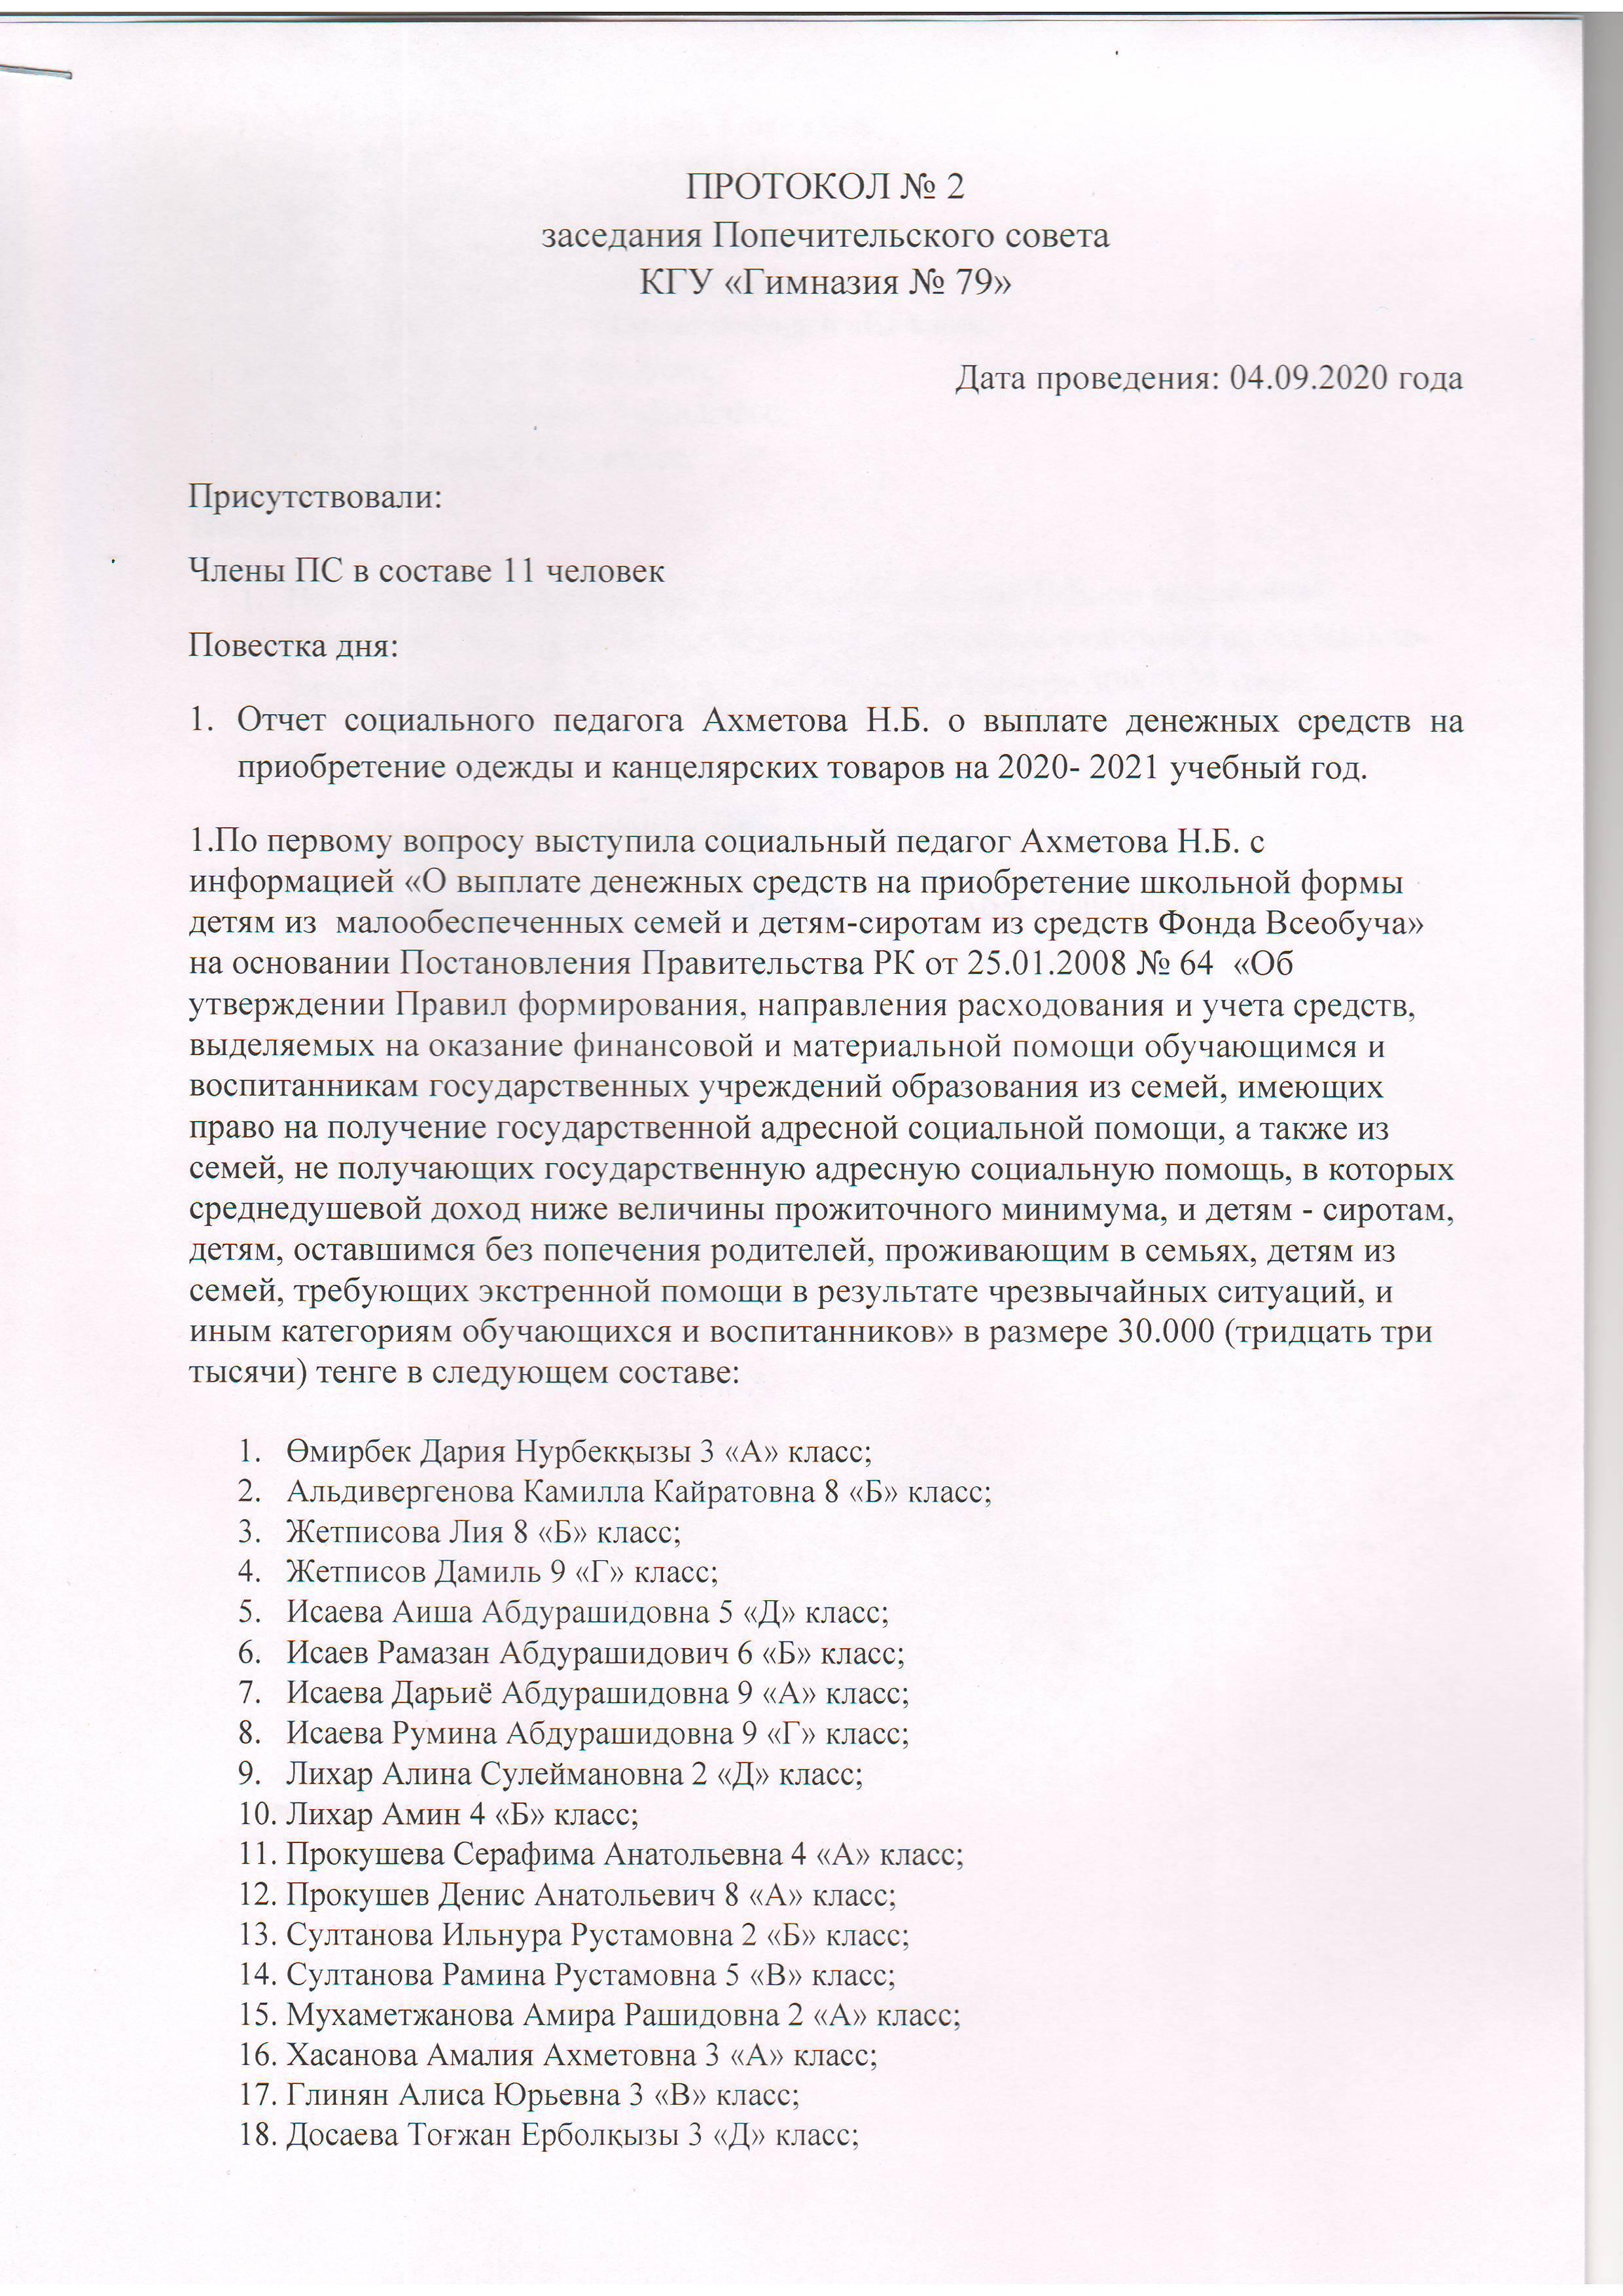 Протокол № 2 Заседания Попечительского совета КГУ "Гимназия №79"